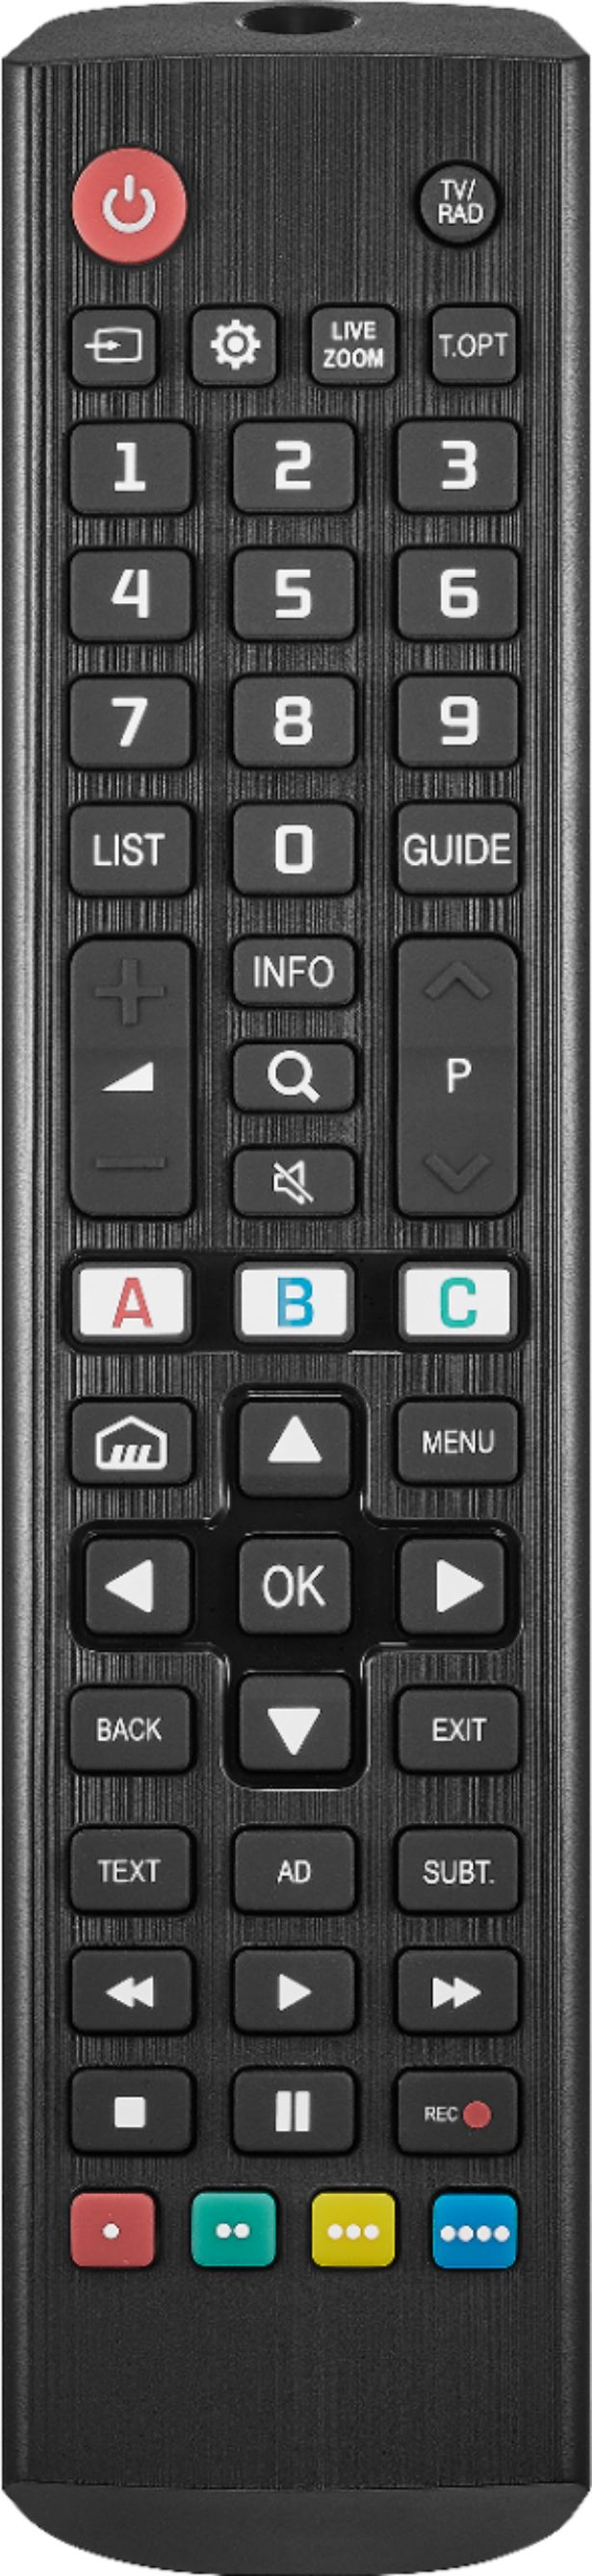 insignia tv remote